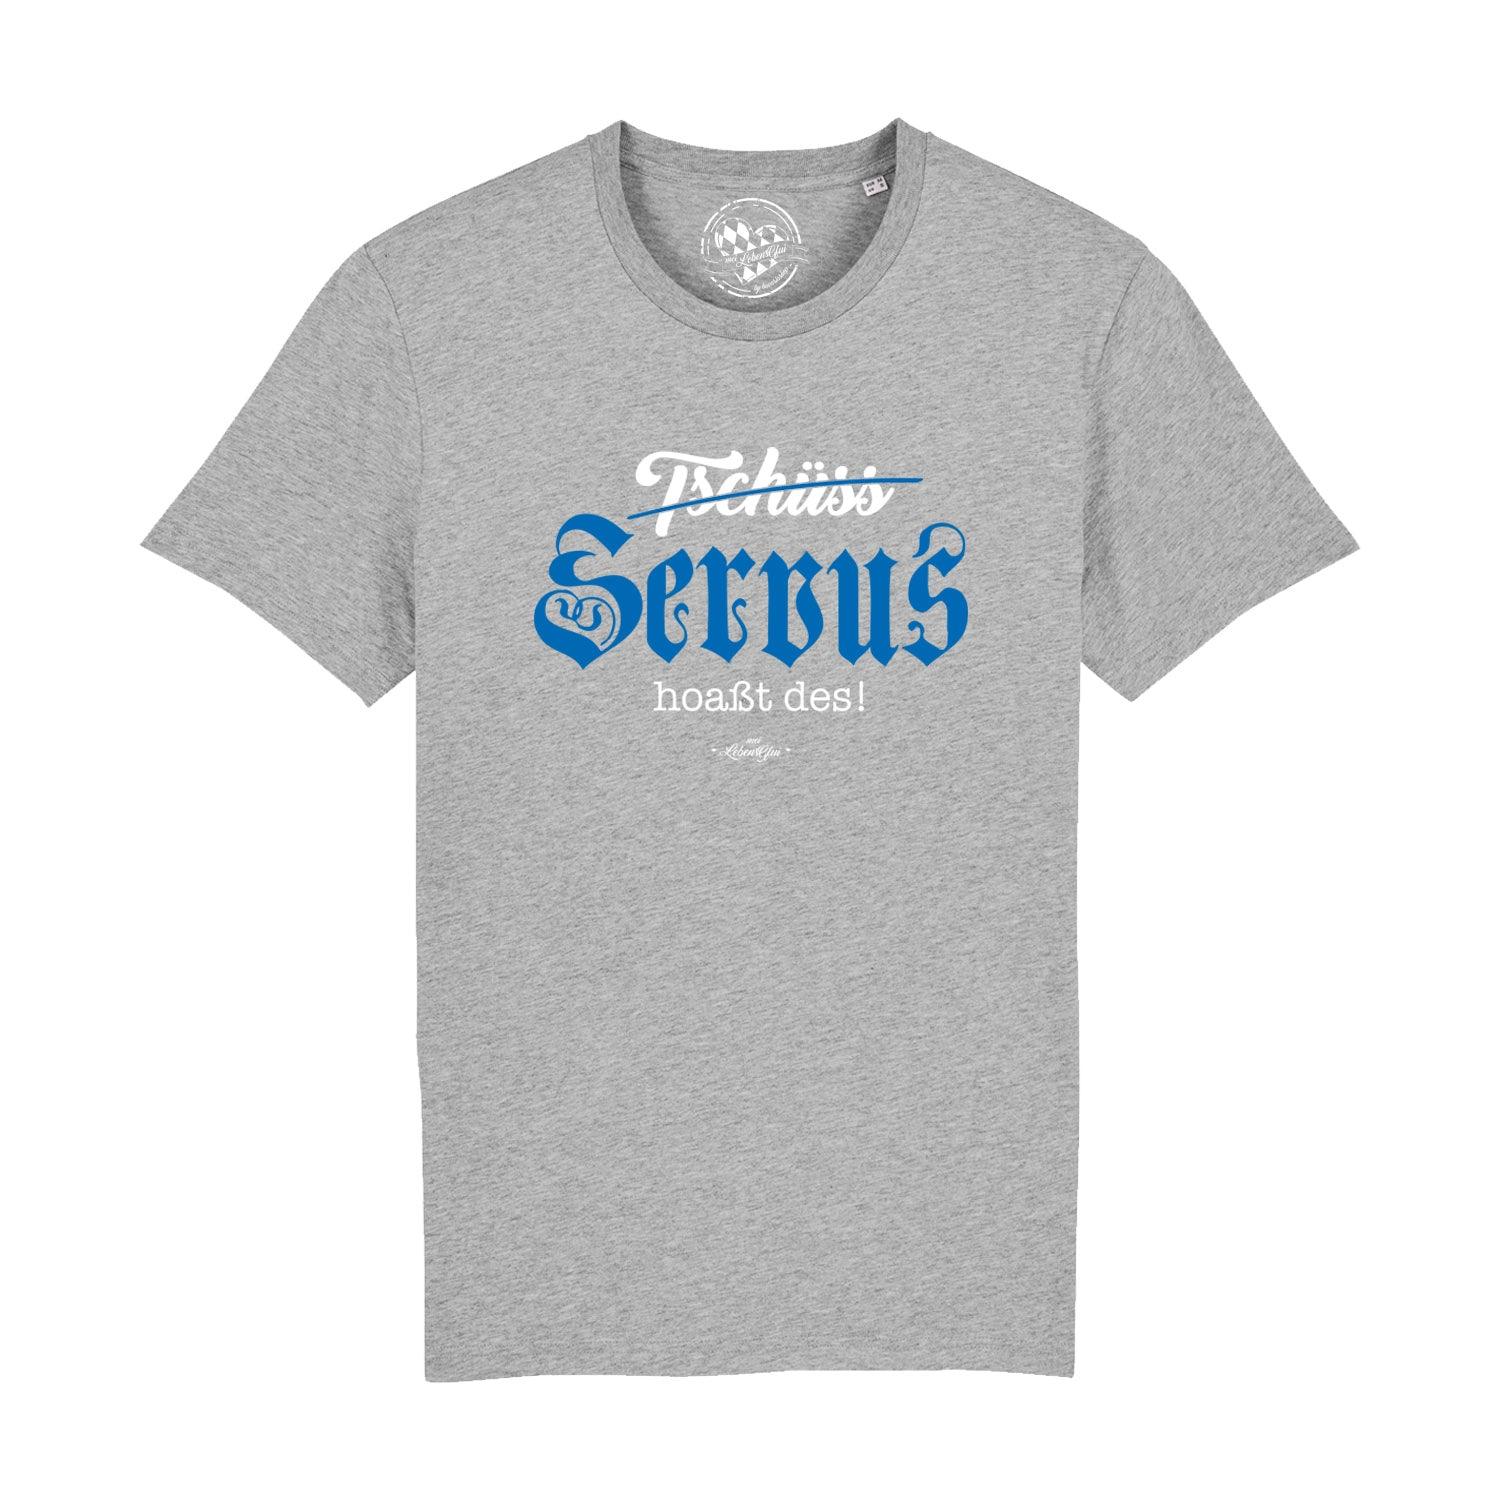 Herren T-Shirt "Servus hoaßt des!" - bavariashop - mei LebensGfui